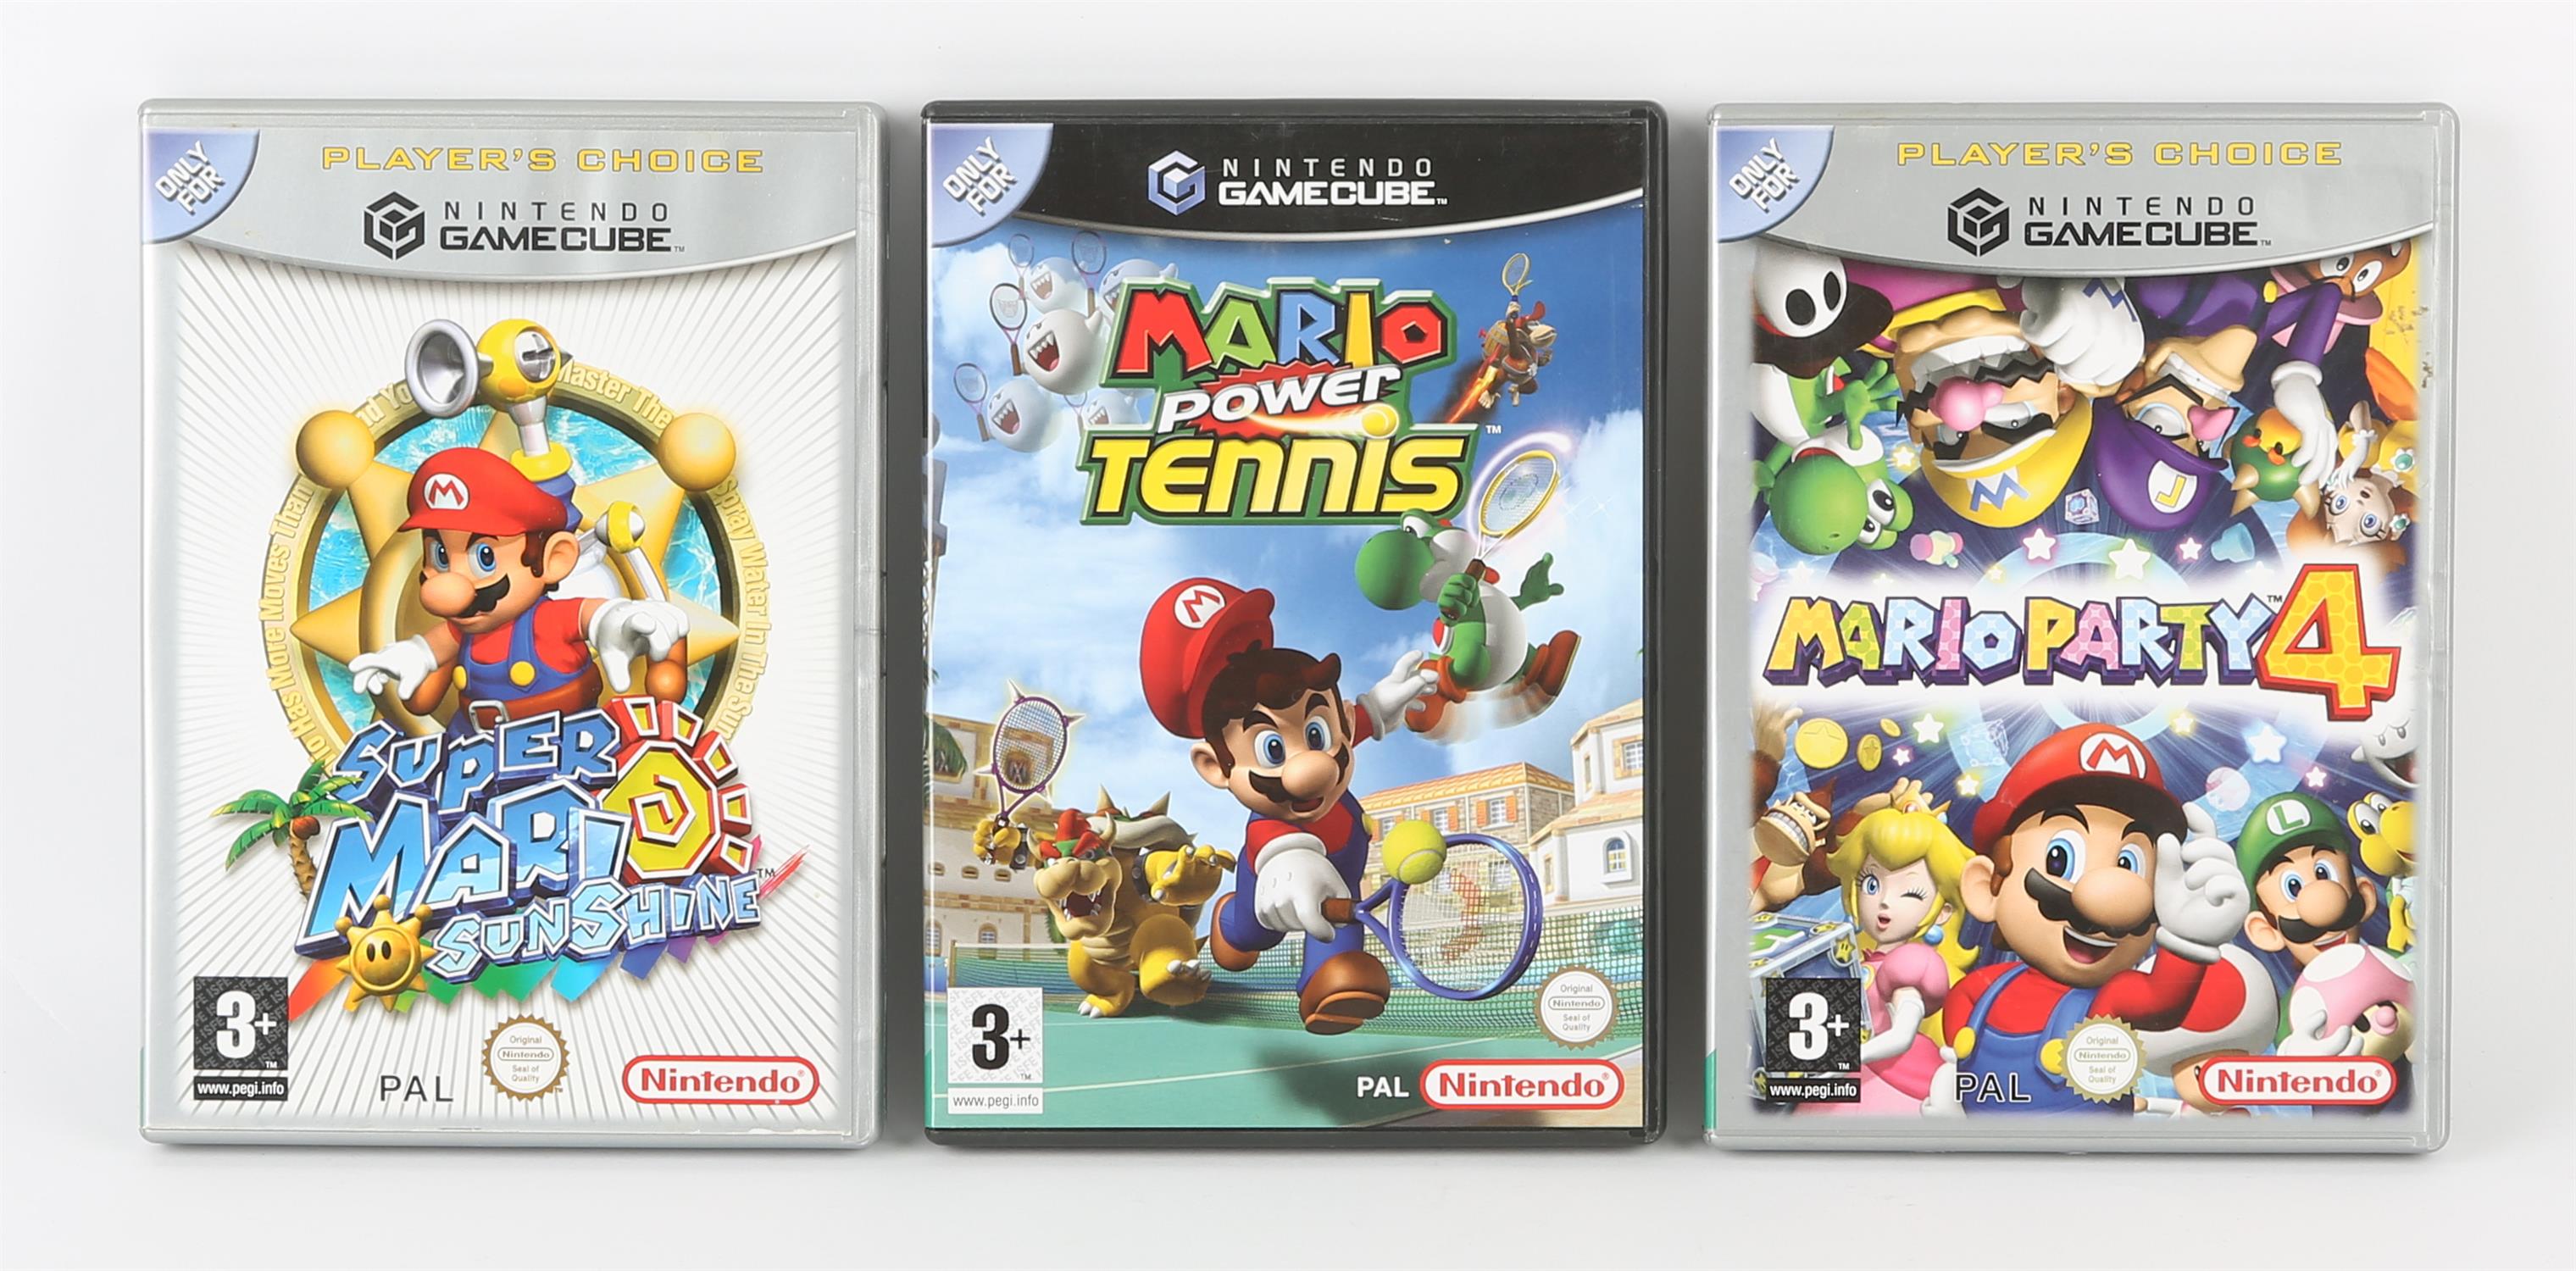 Nintendo GameCube Mario bundle (PAL) Games include: Mario Party 4, Super Mario Sunshine and Mario